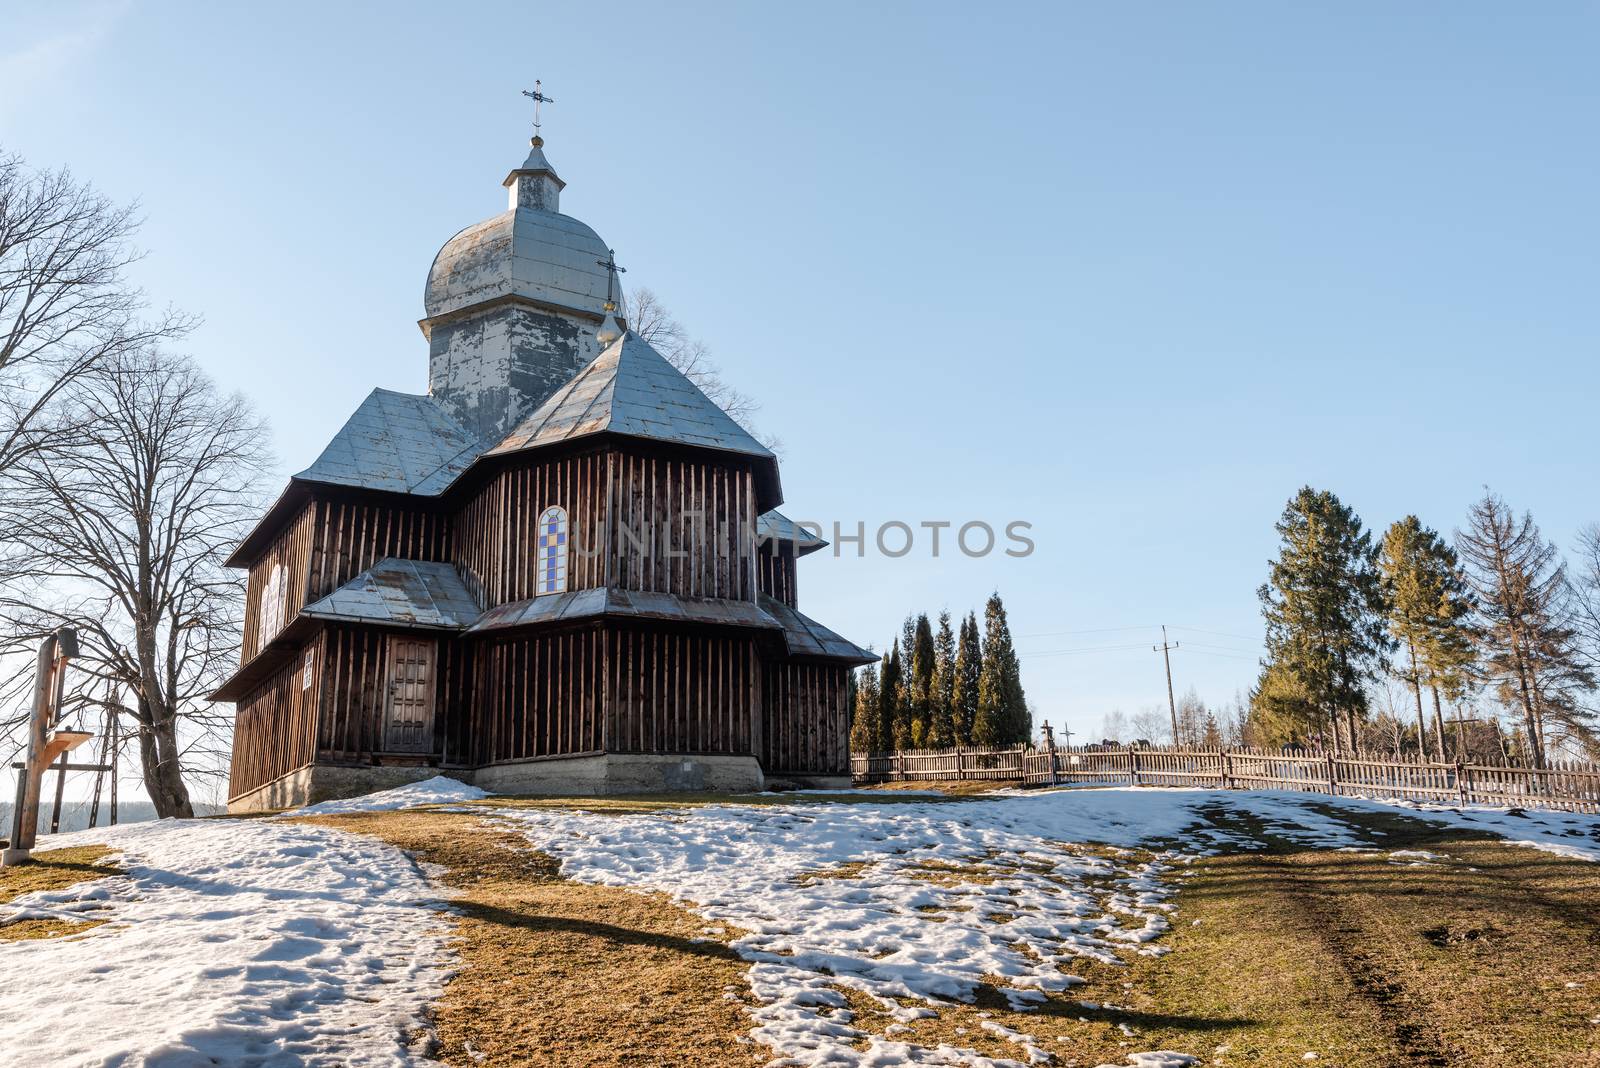 Exterior of Hoszowczyk Wooden Orthodox Church.  Bieszczady Archi by merc67